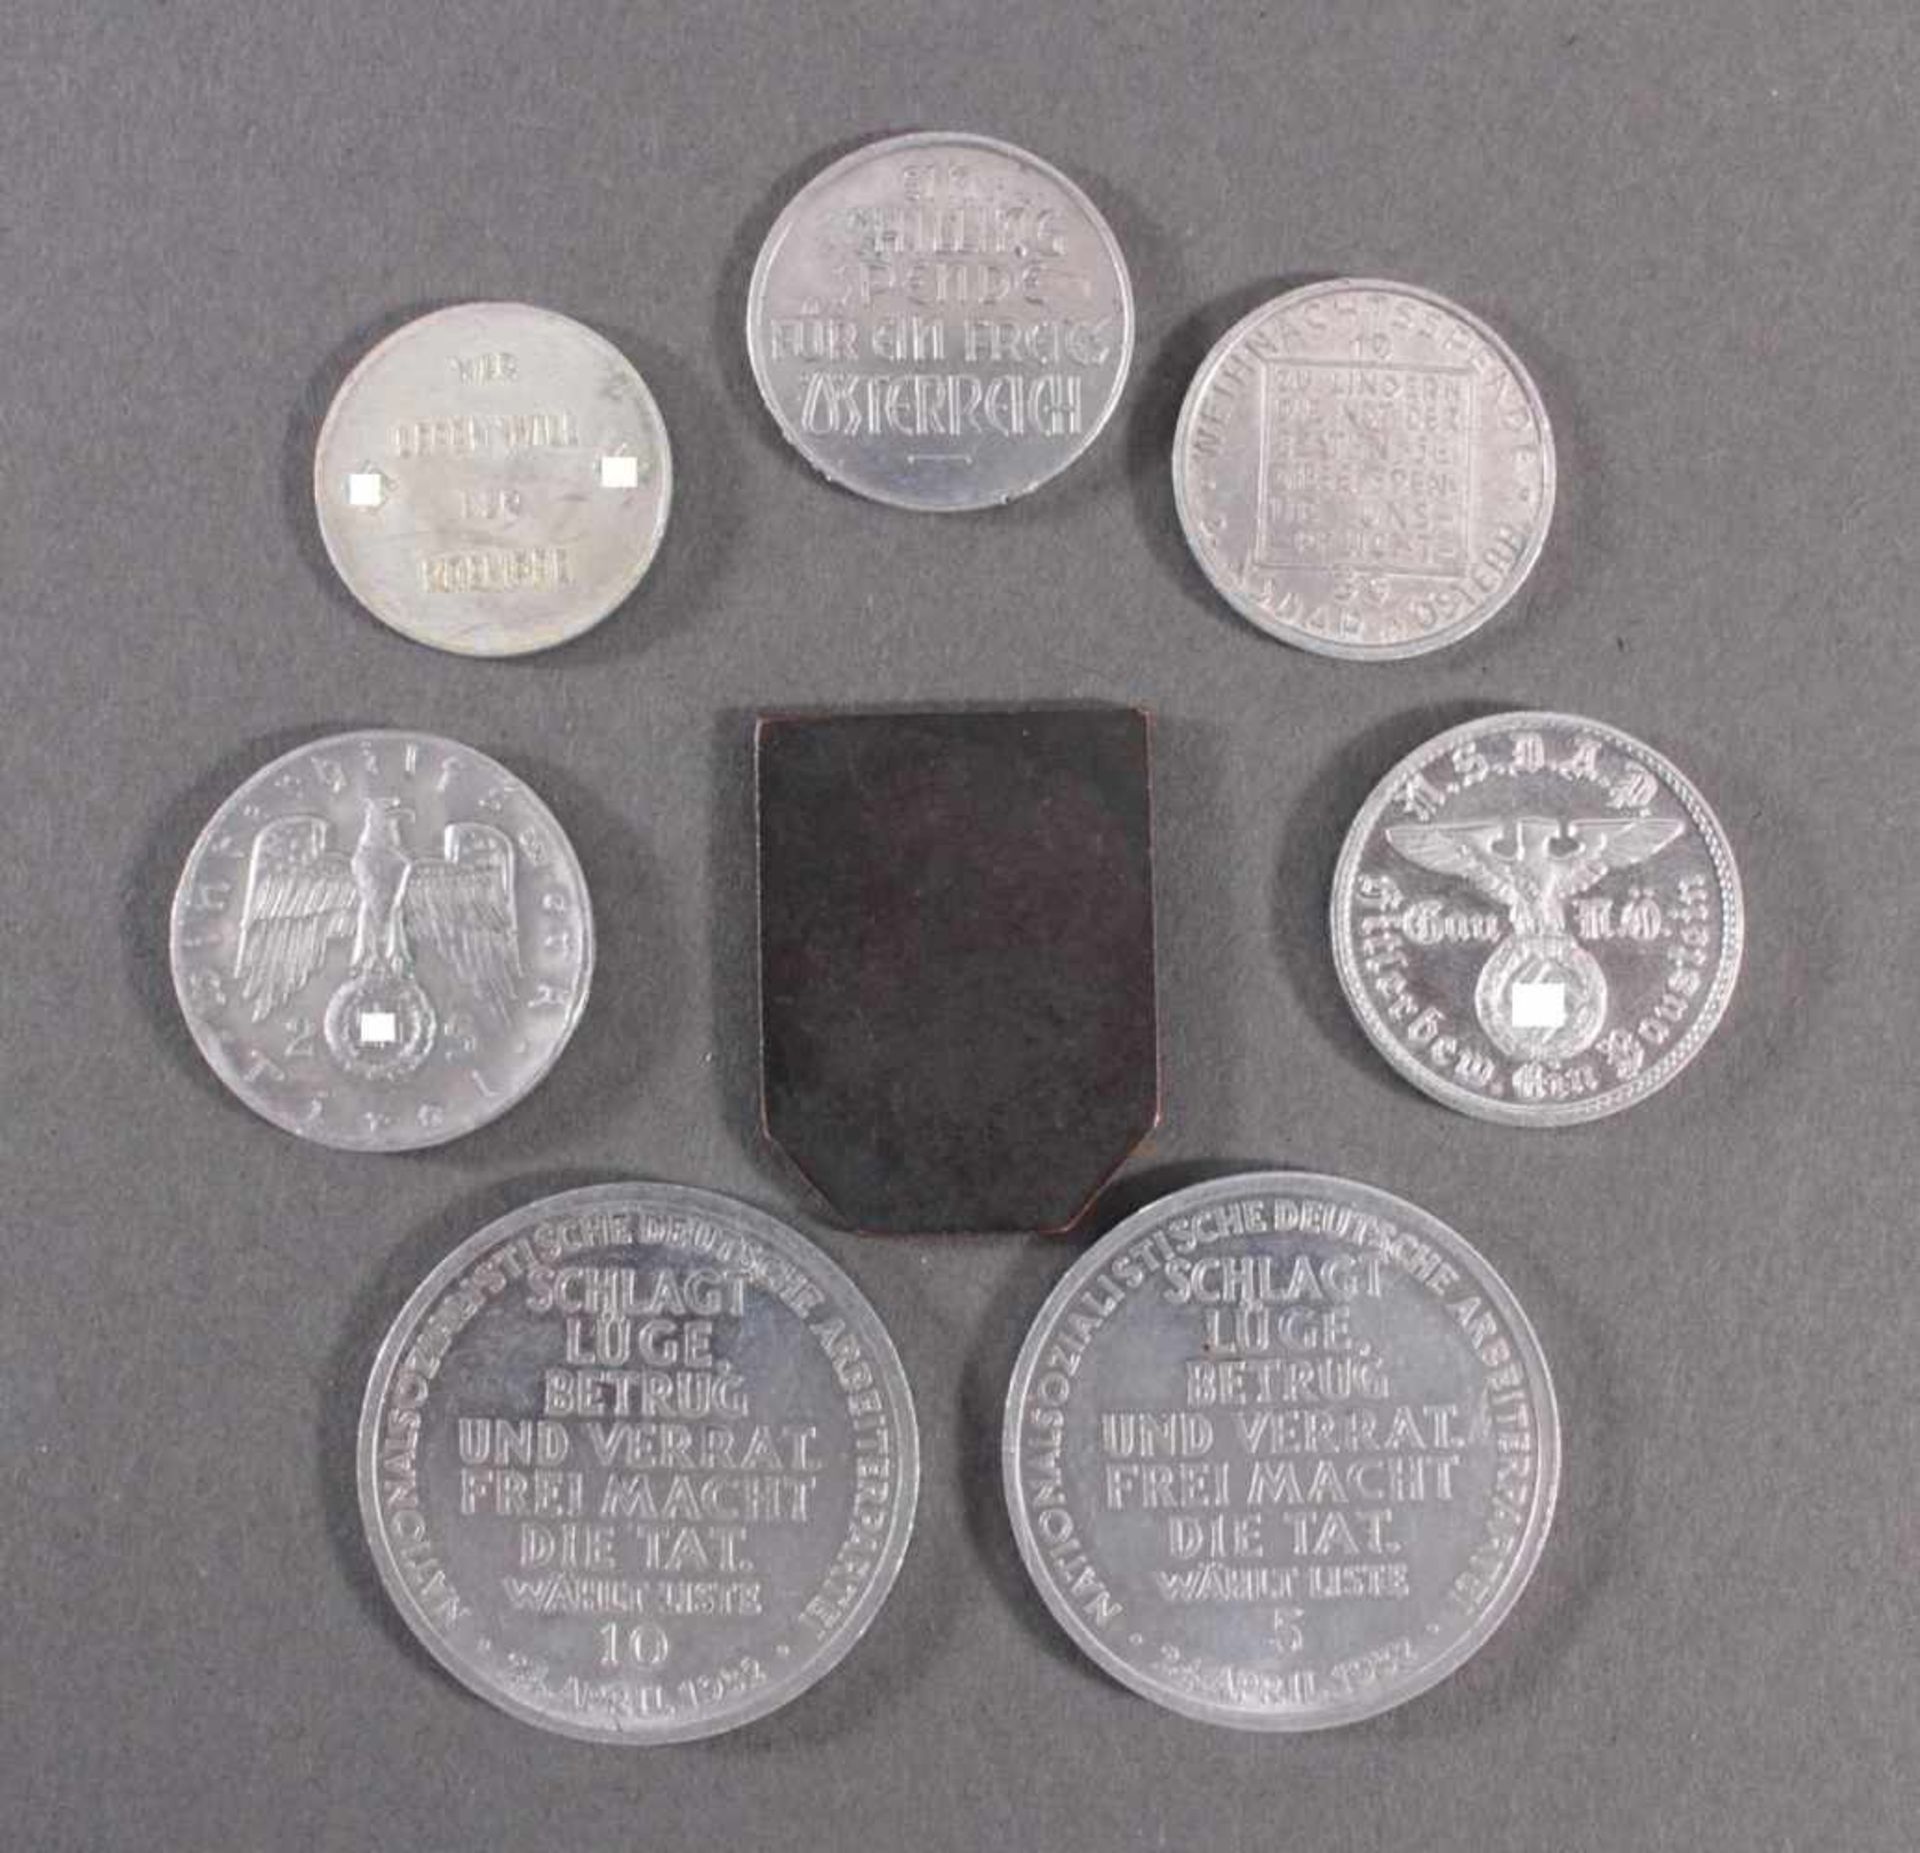 8 Medaillen / Klippen, WHW und Wahl 1932NSDAP und WHW. - Image 2 of 2